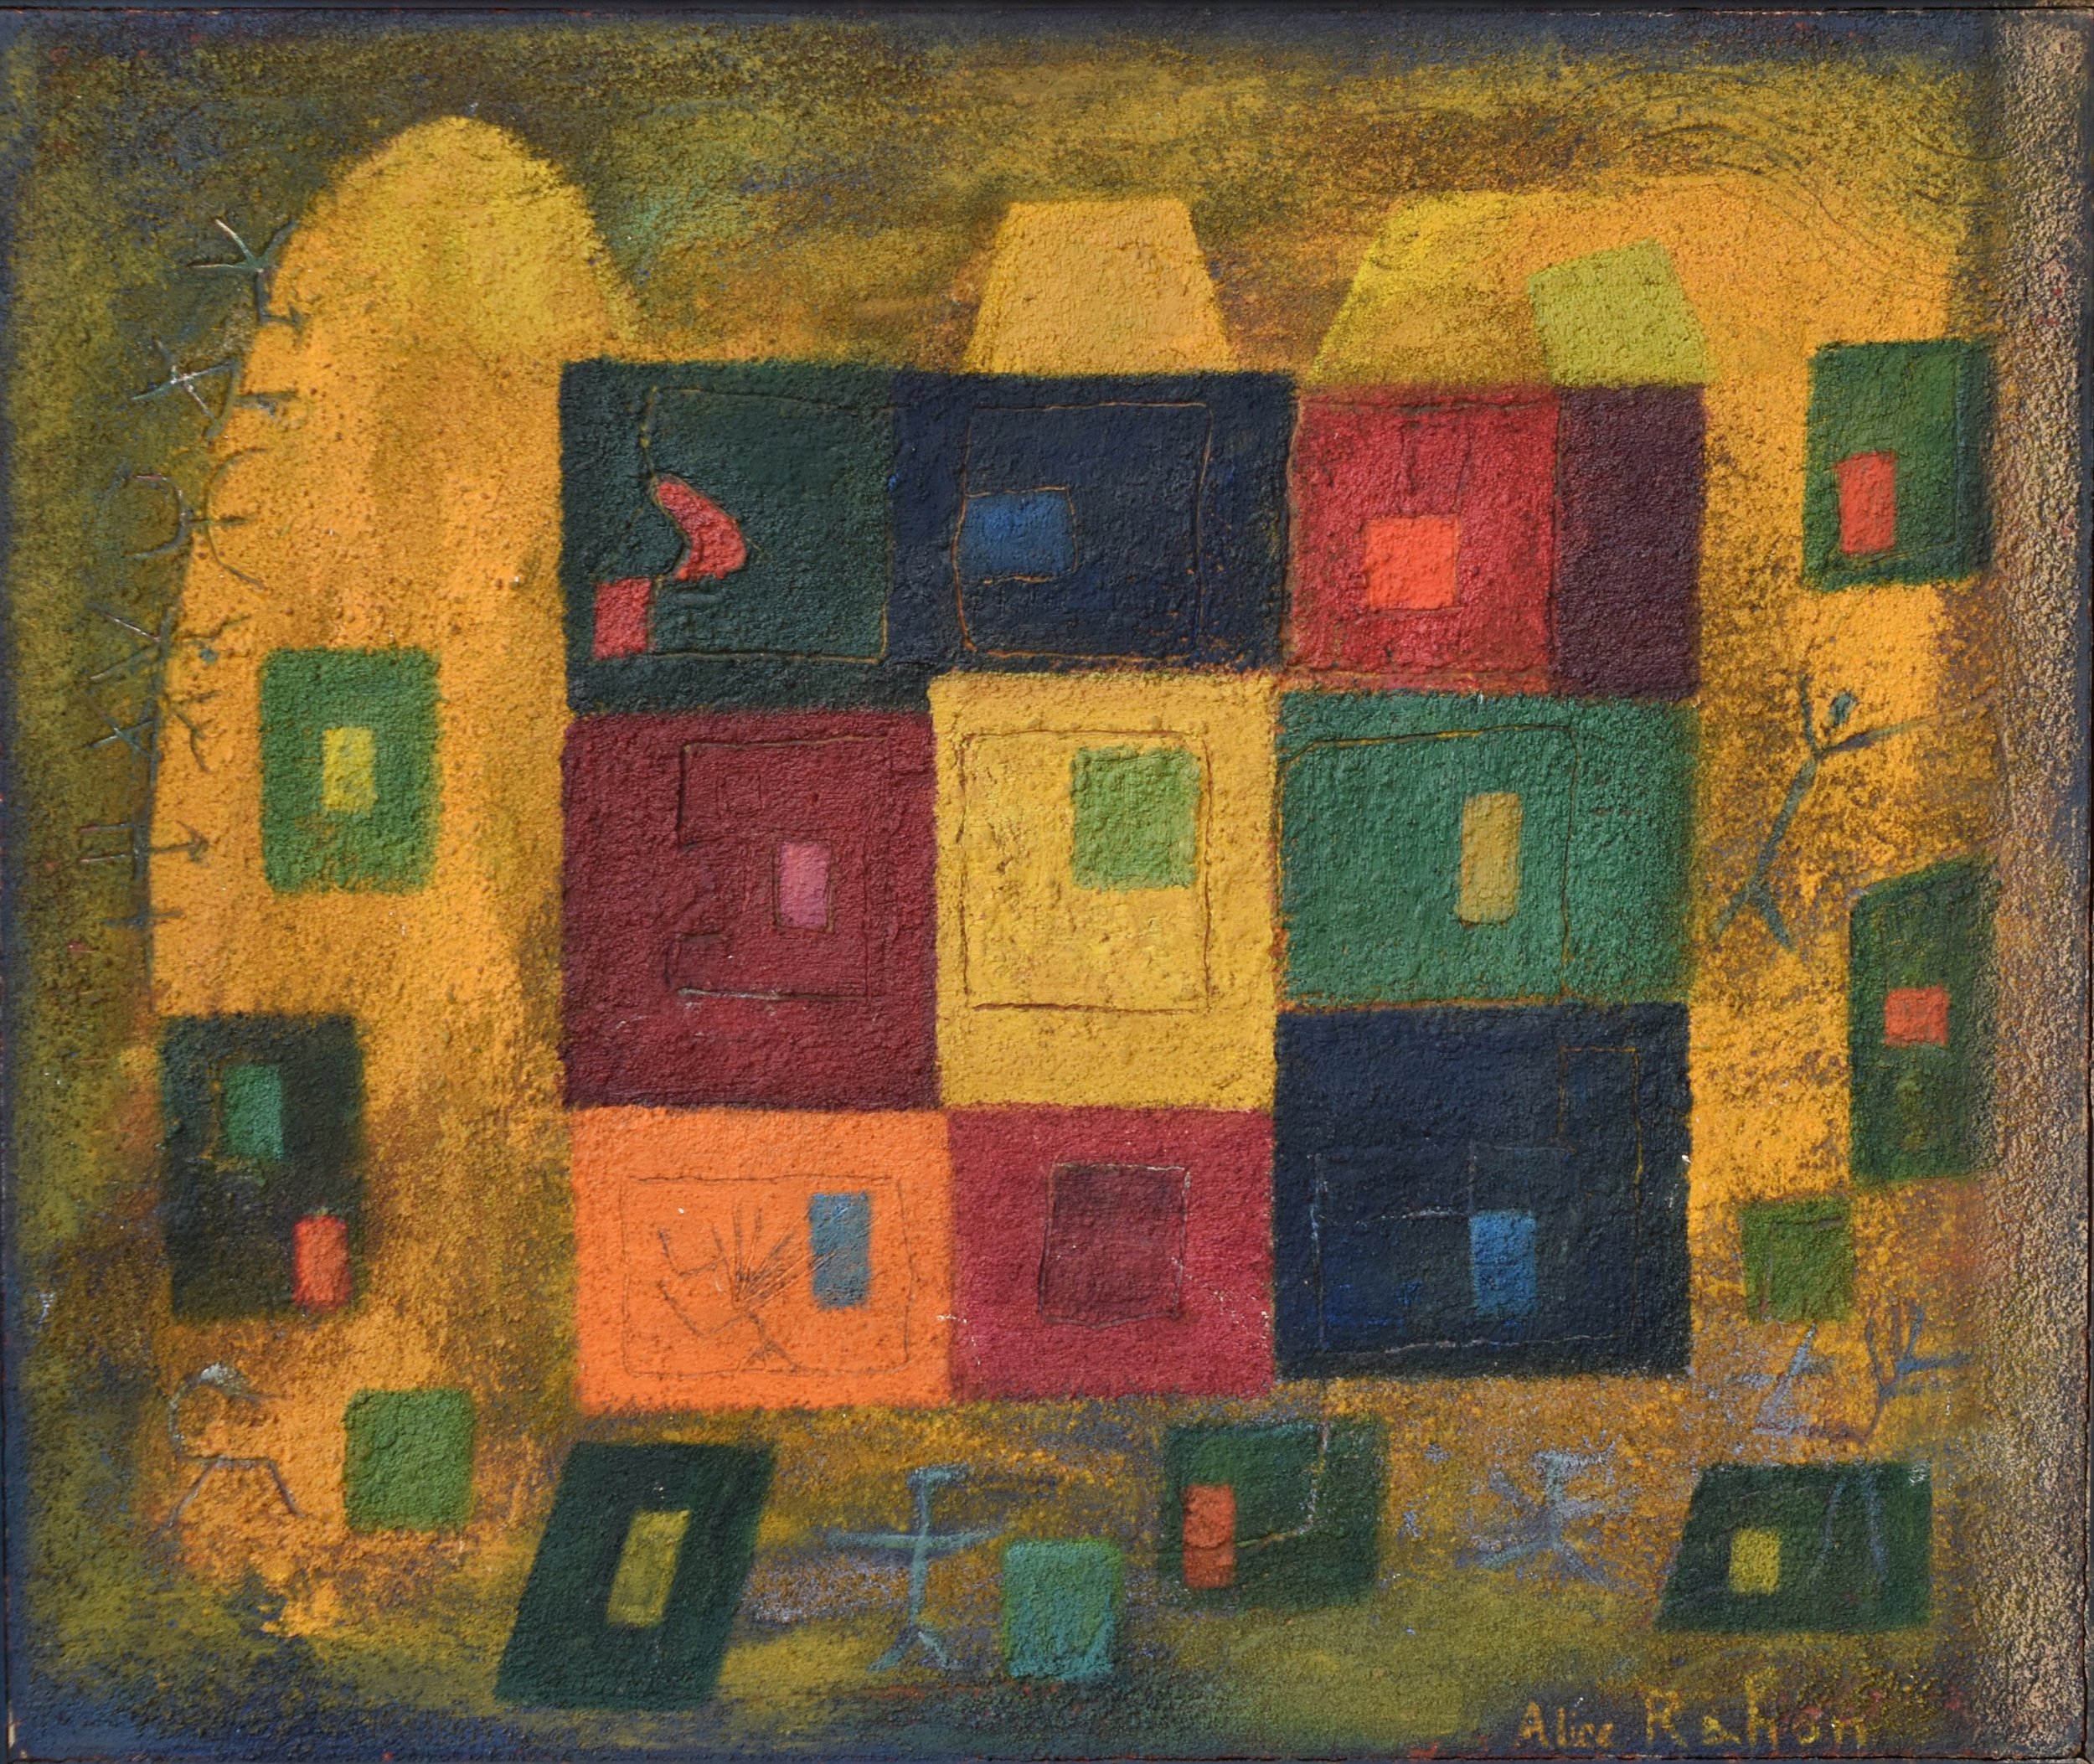  Alice Rahon,  La cuadra , Oil and sand on canvas, 1942-1950, 18 x 21 1/2 inches (46 x 55 cm) 